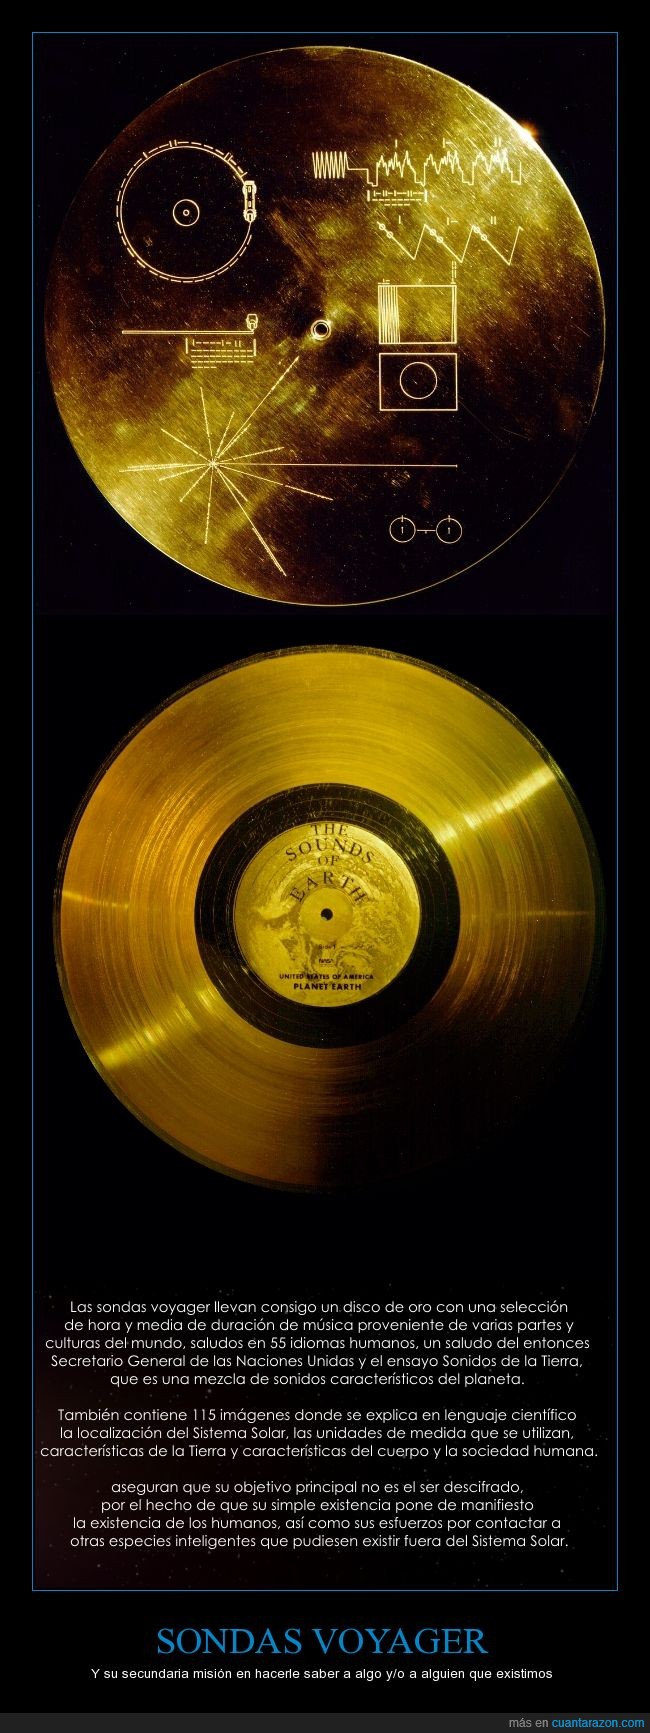 Voyager 1 y 2,las sondas pioneer 11 y 10 tambien tienen algo similar,disco de oro,sonidos de la tierra,voyager